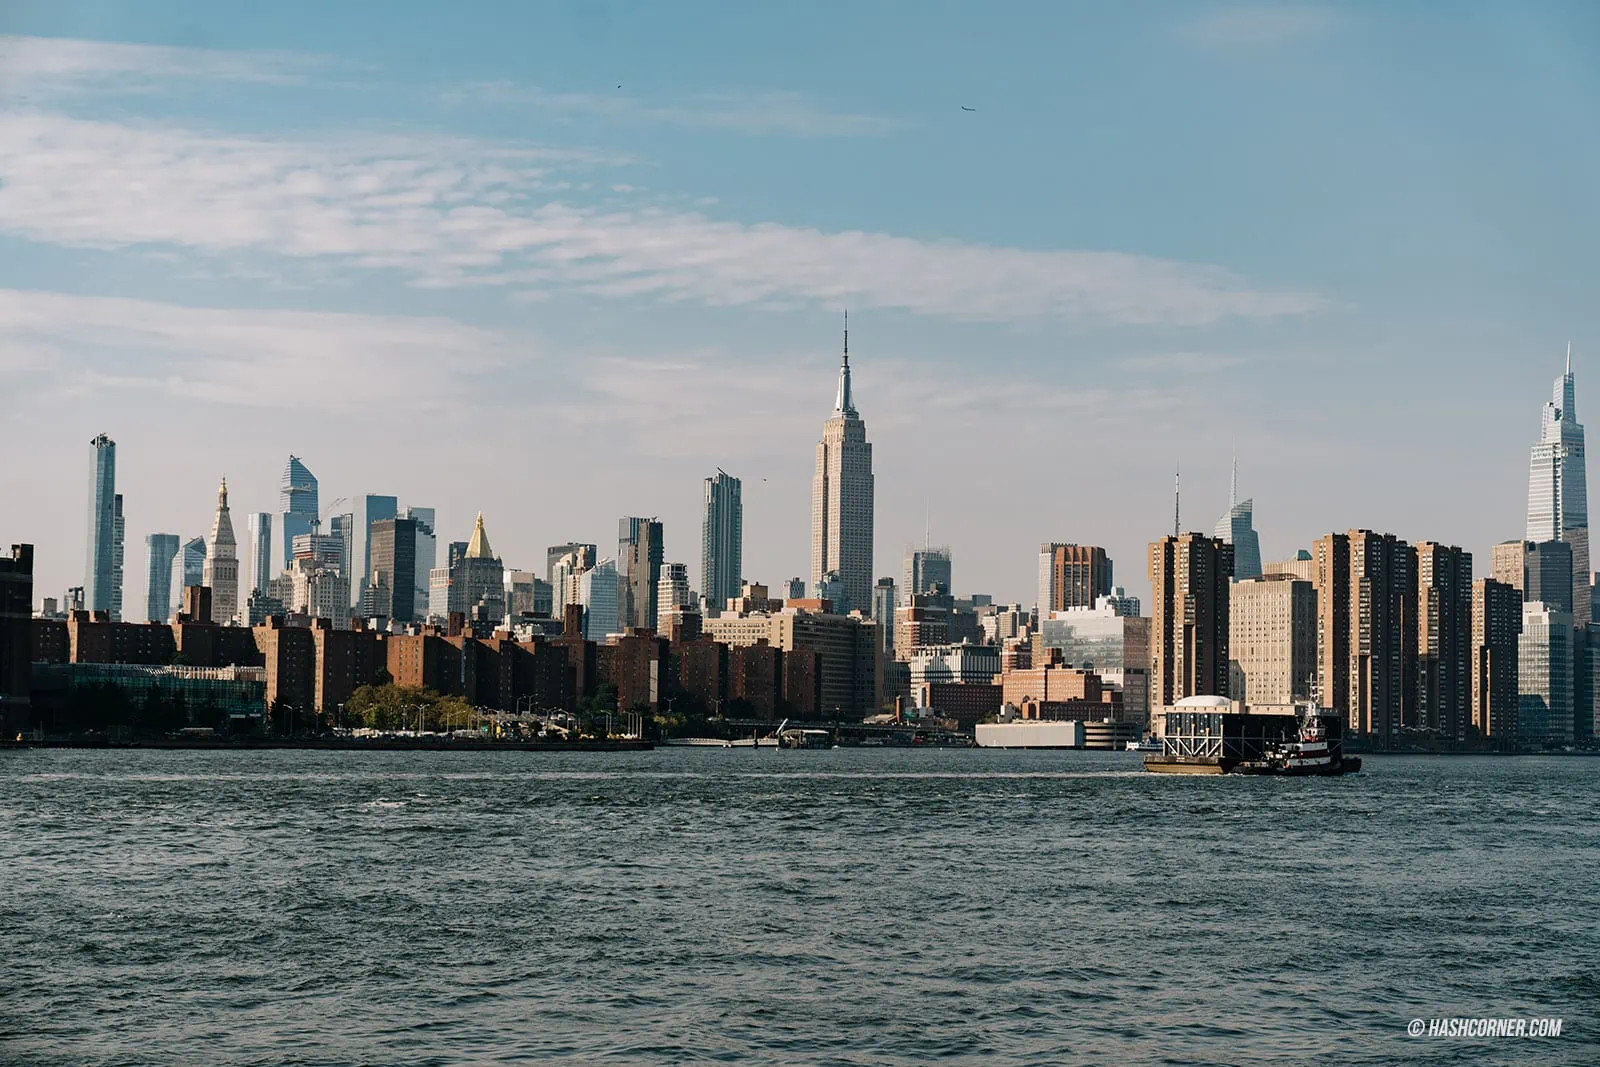 รีวิว นิวยอร์ก (New York City) x อเมริกา 25 ที่เที่ยวจัดเต็มเมืองในฝัน